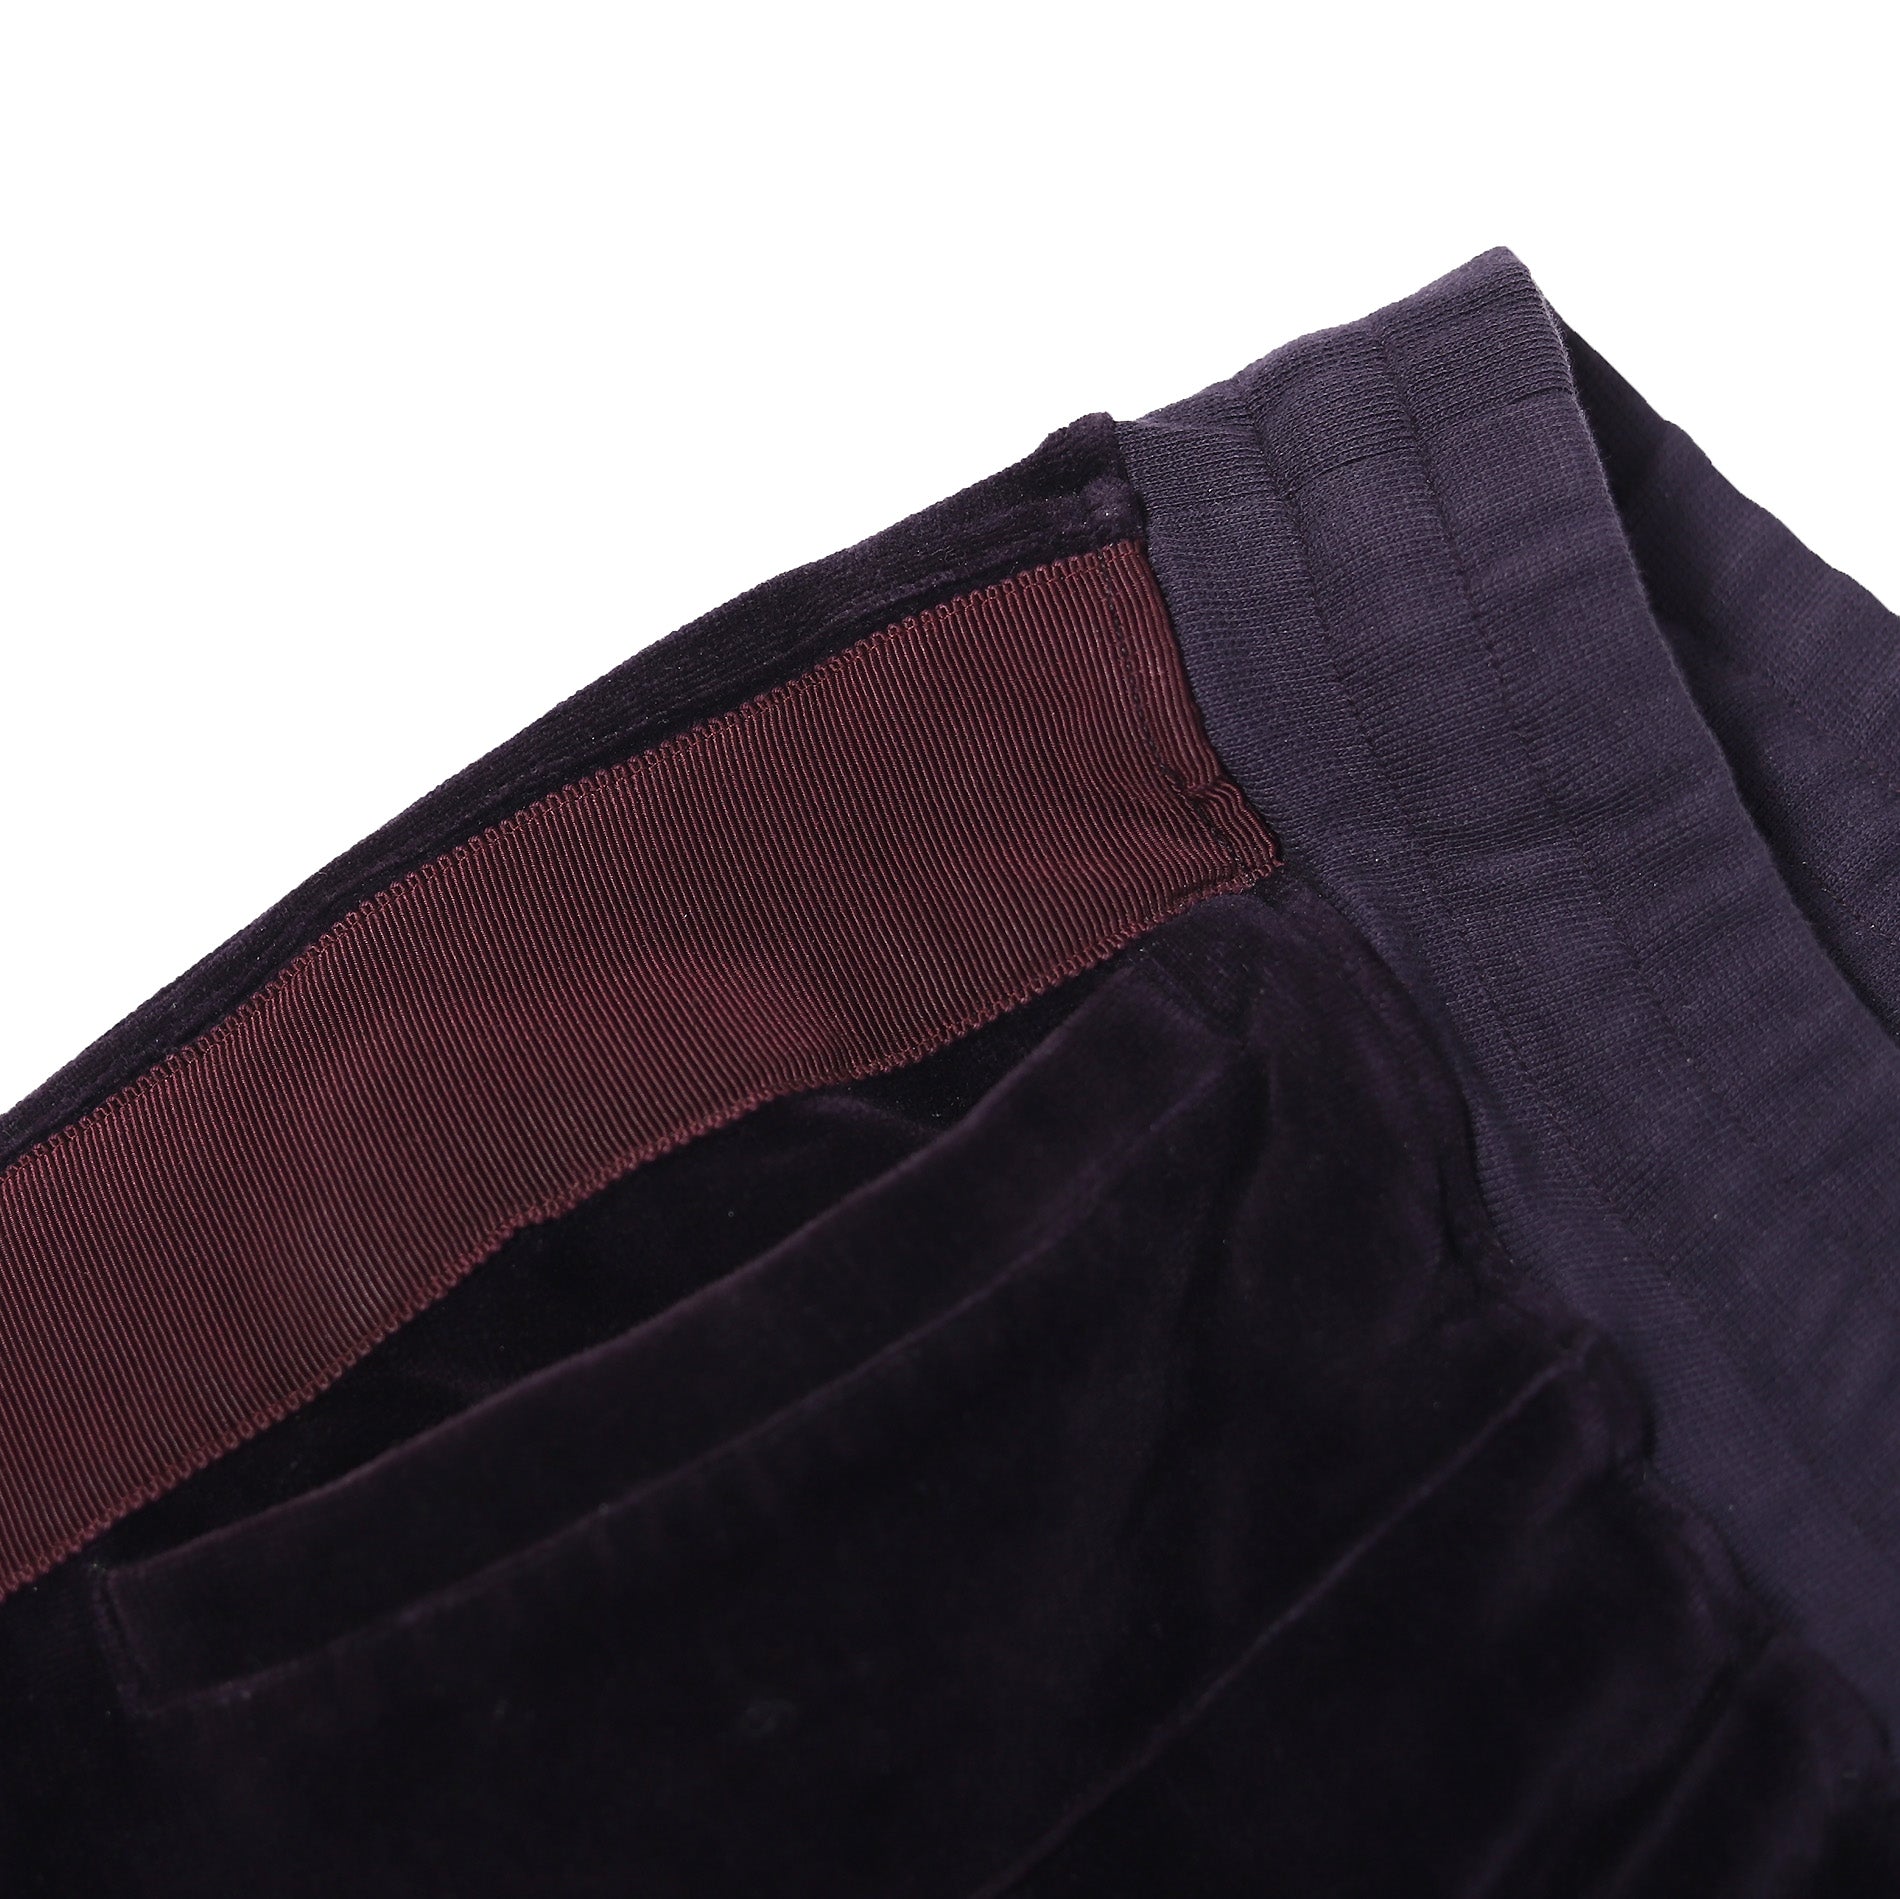 Haider Ackermann FW15 Purple Velvet Sweatpants